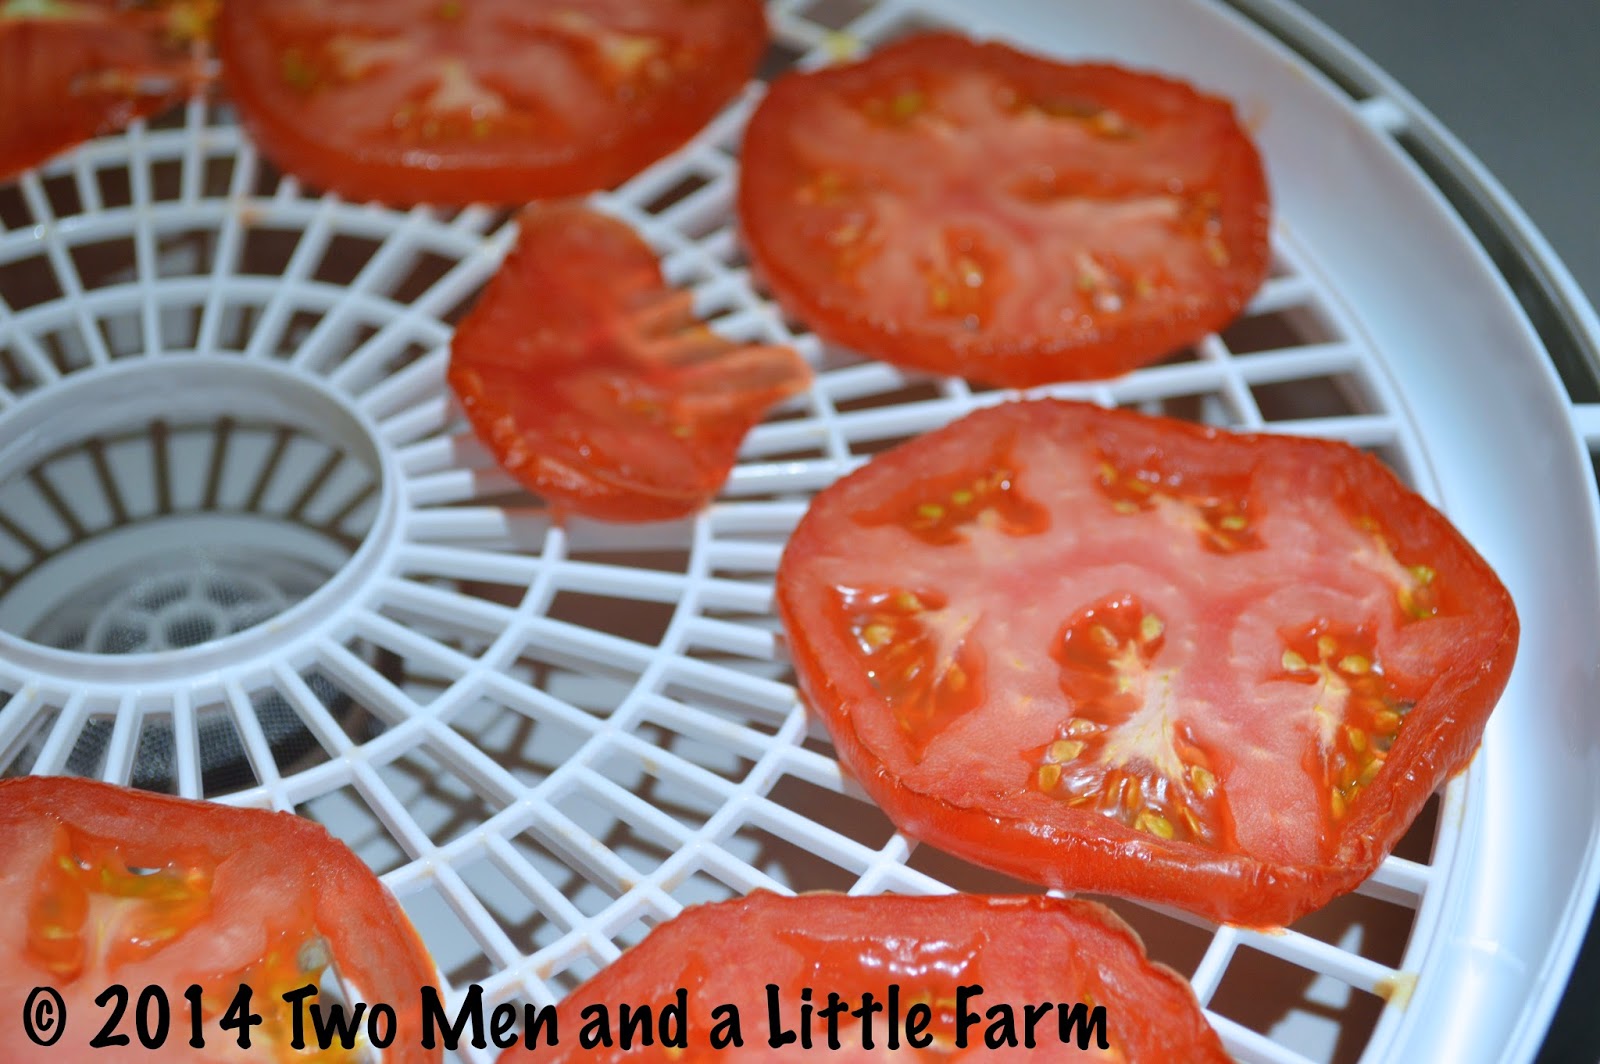 http://2.bp.blogspot.com/-d9NL571Hgsc/UyYMiflQ-KI/AAAAAAAAOek/yKmYuDZotdE/s1600/Dehydrating+tomatoes+1.JPG